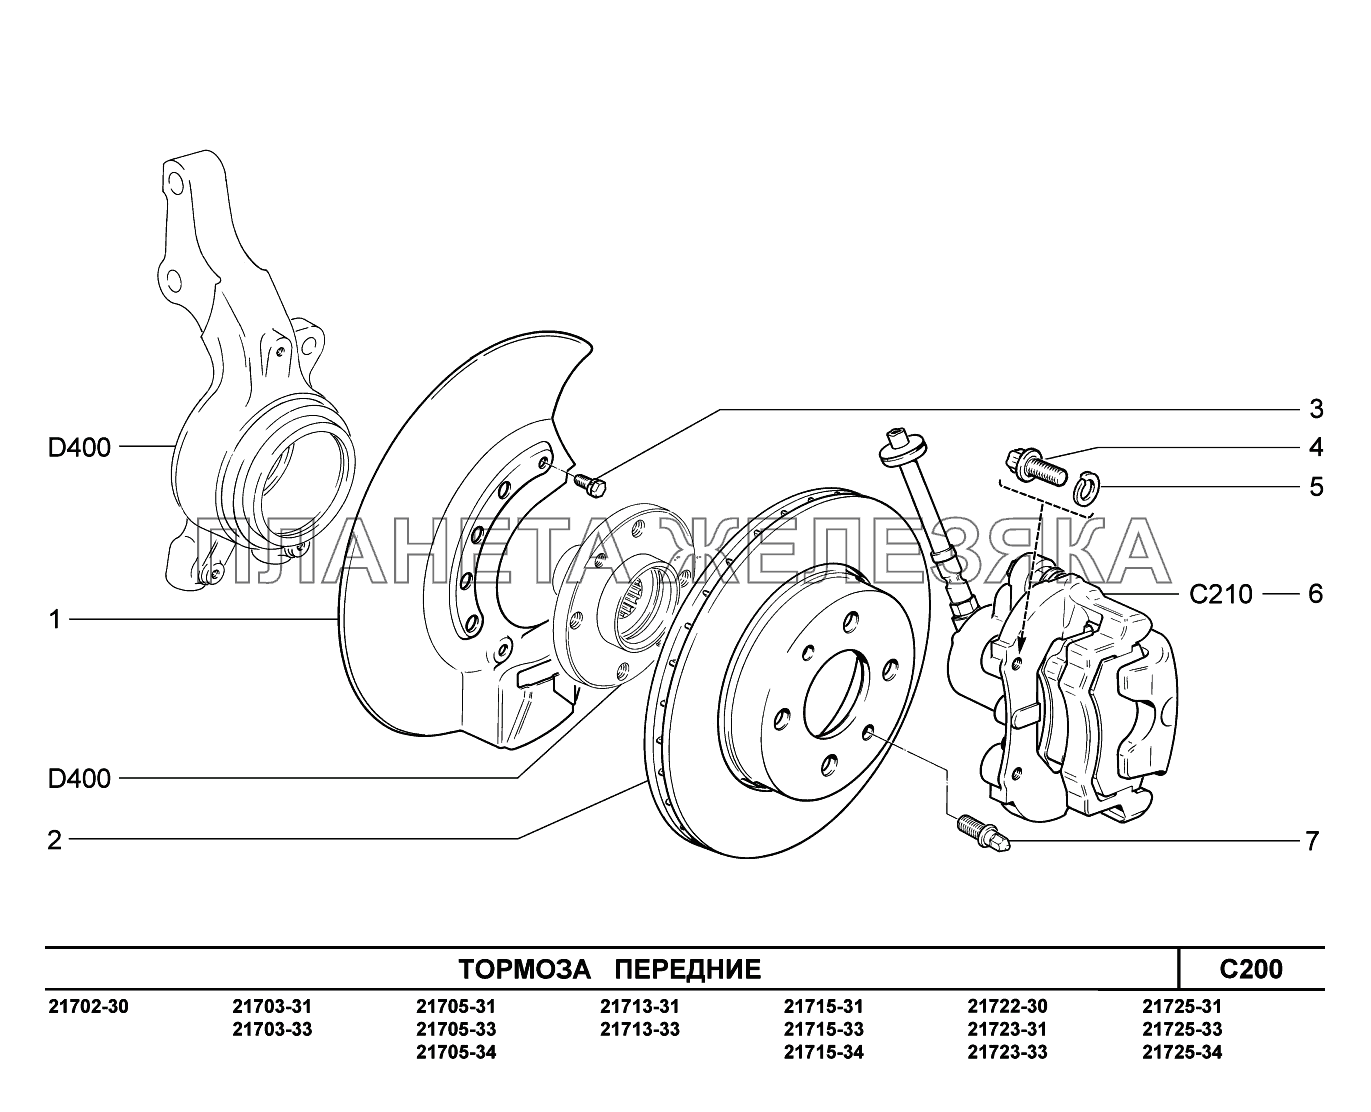 C200. Тормоза передние ВАЗ-2170 